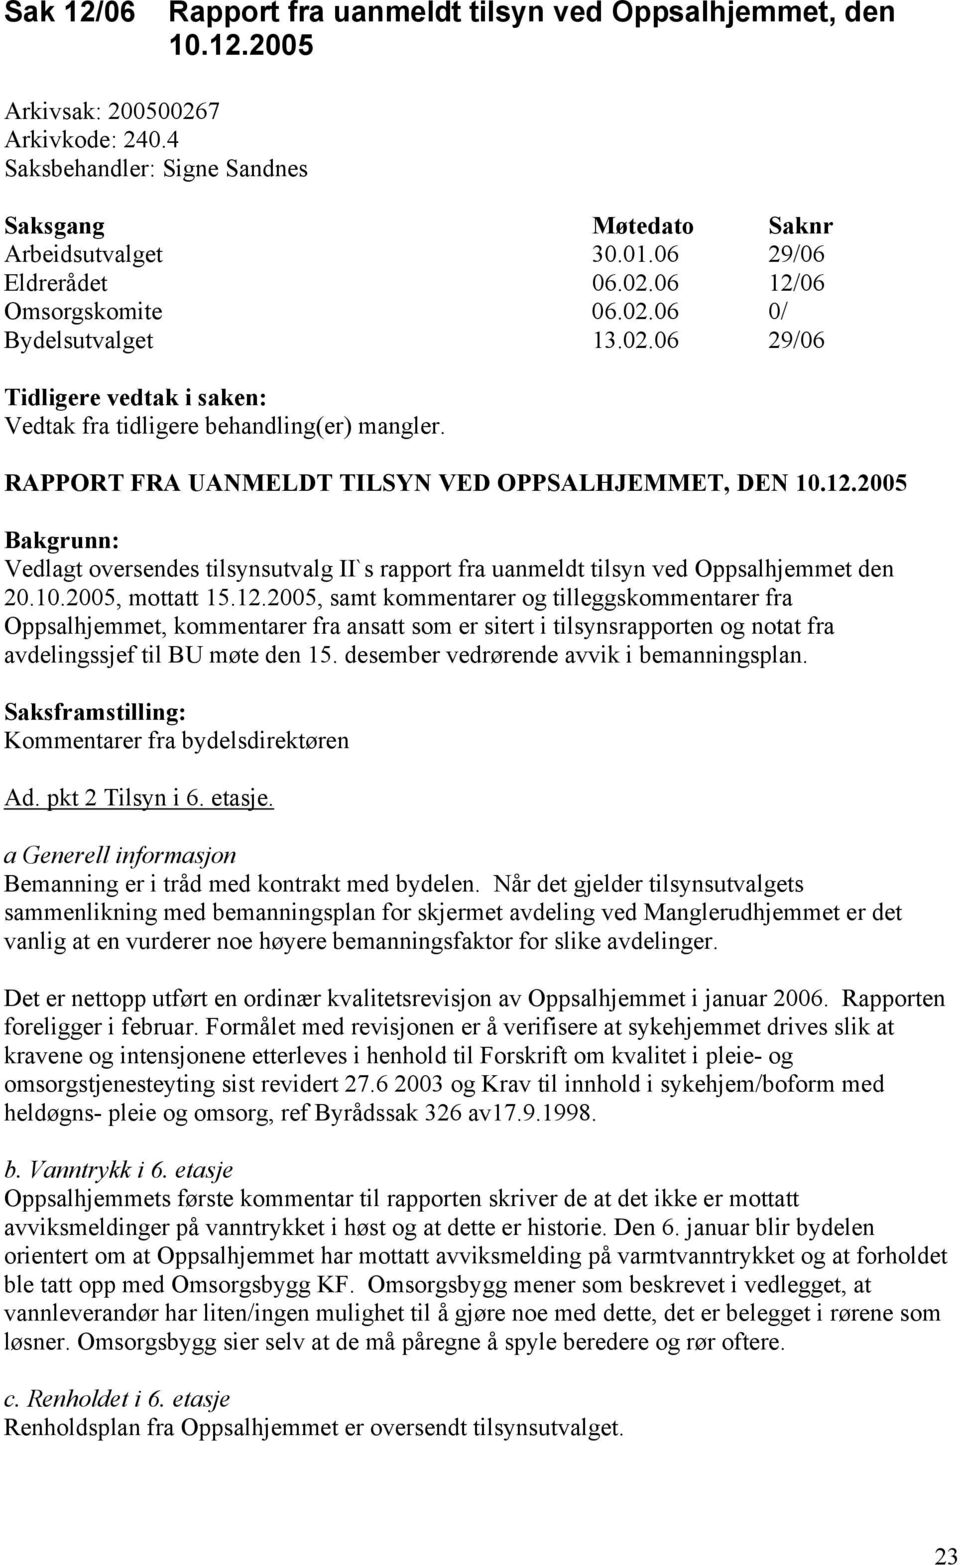 2005 Bakgrunn: Vedlagt oversendes tilsynsutvalg II`s rapport fra uanmeldt tilsyn ved Oppsalhjemmet den 20.10.2005, mottatt 15.12.